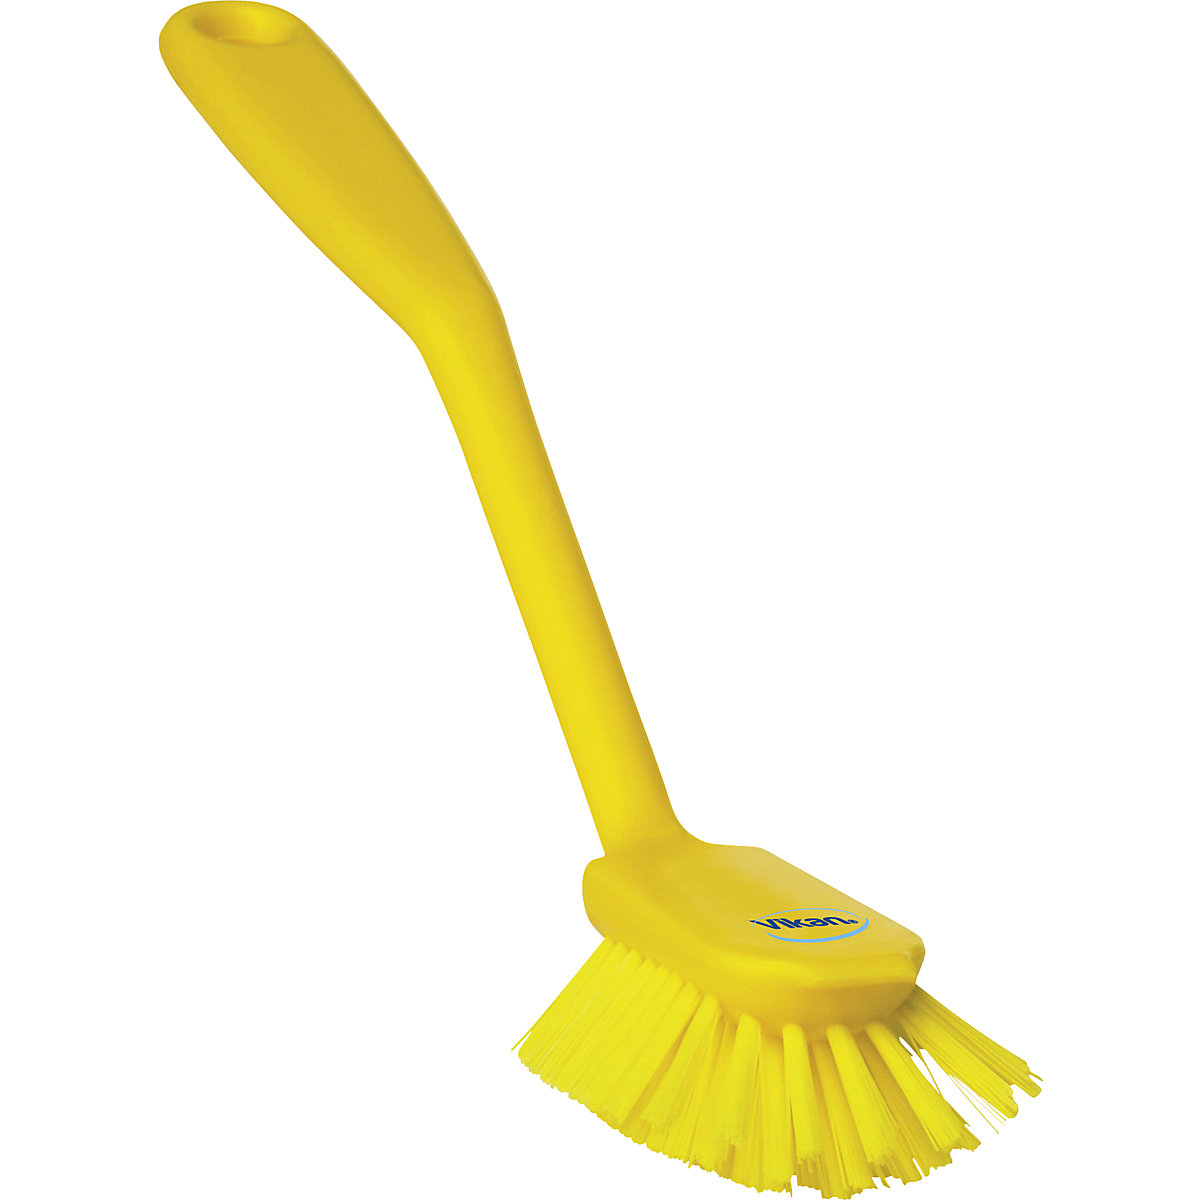 Vikan – Scrubbing brush with scraper edge, medium, pack of 20, yellow